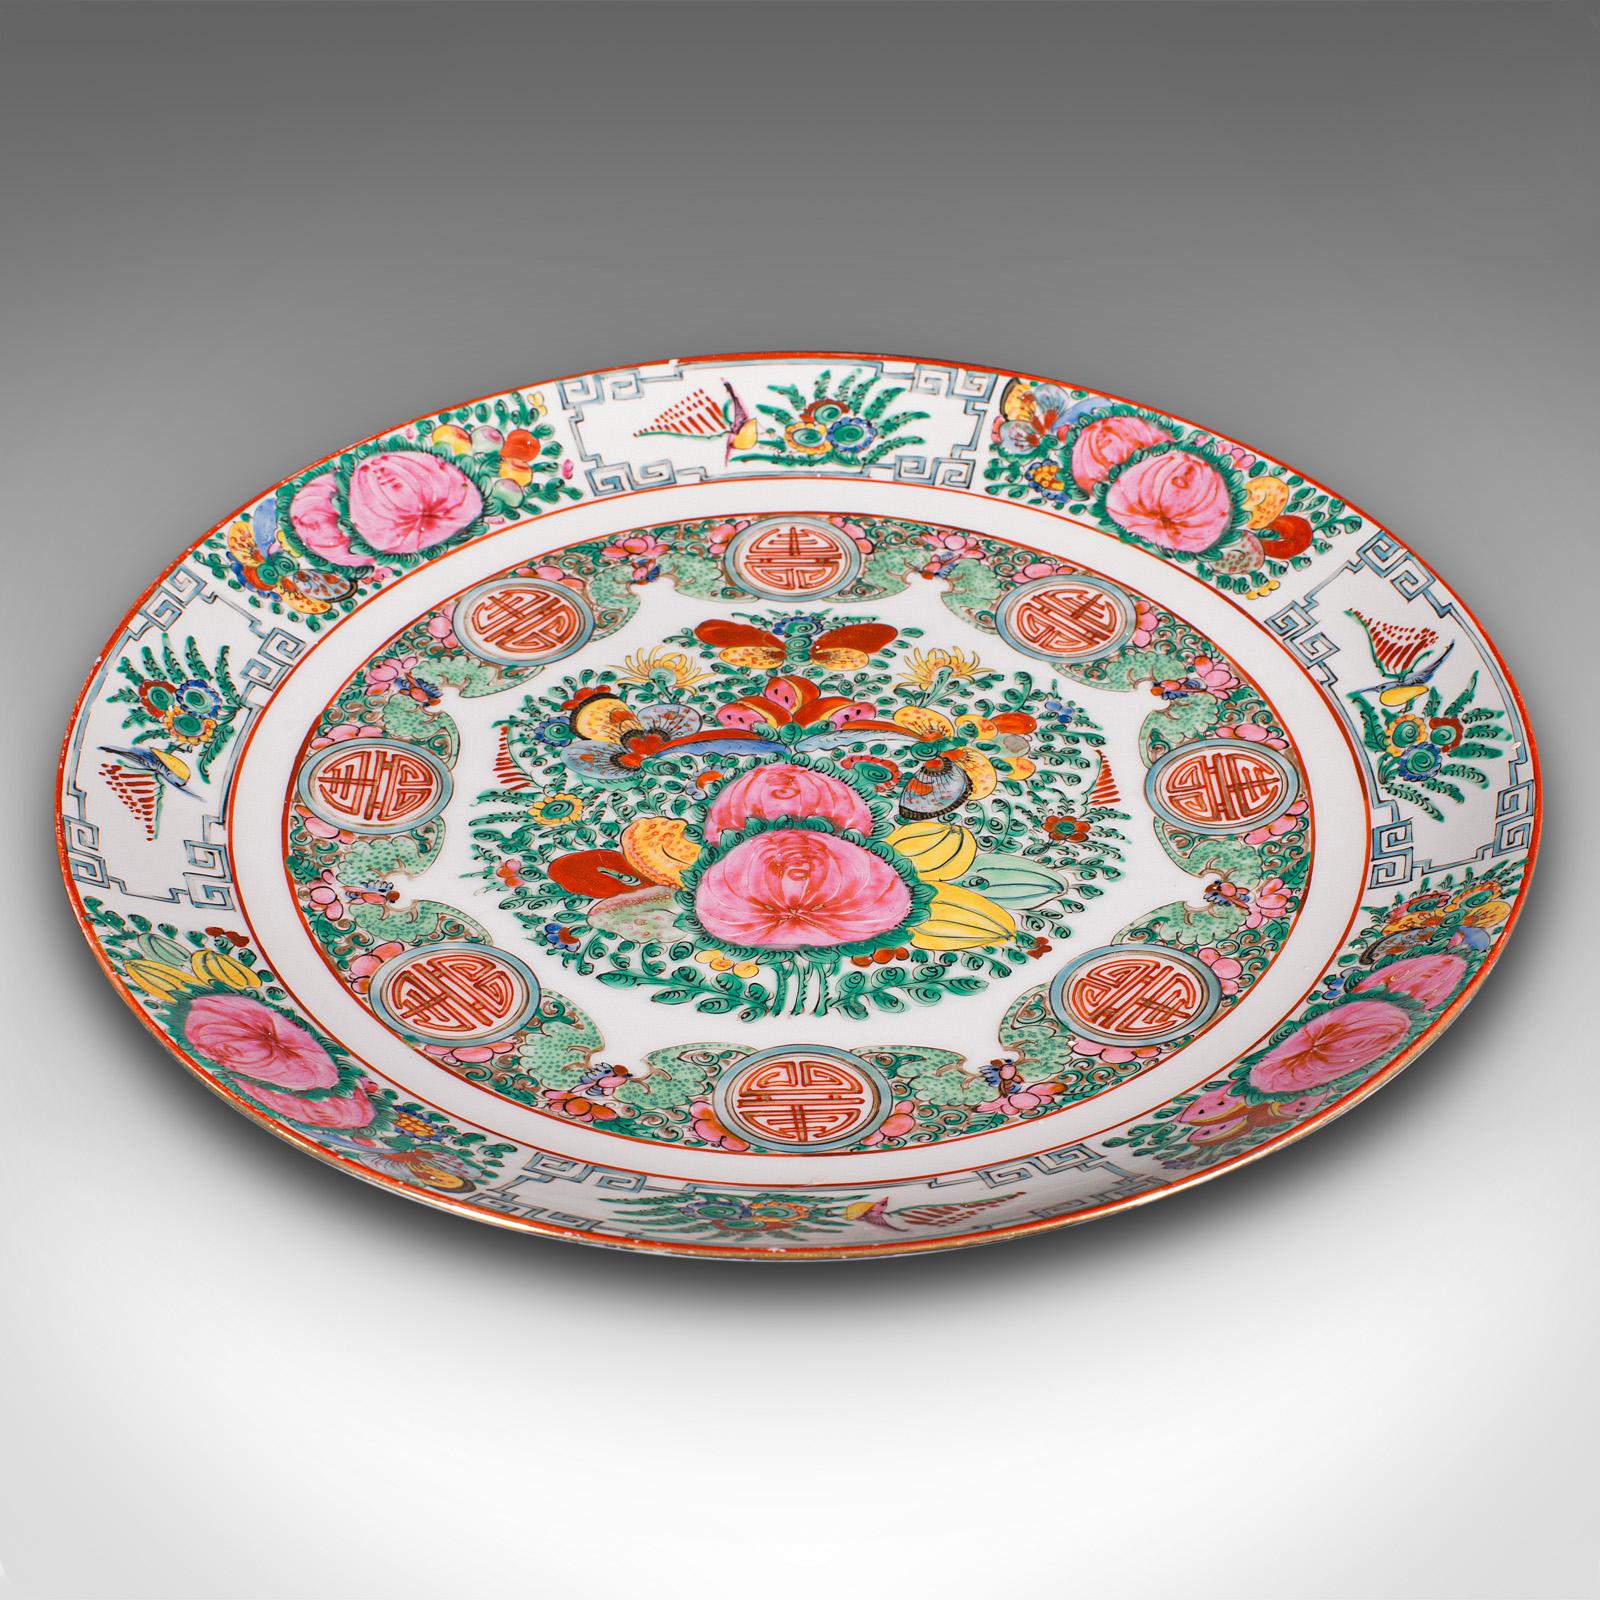 Il s'agit d'une assiette de célébration ancienne. Chargeur décoratif chinois en céramique, datant de la fin de la période victorienne, vers 1900.

Des couleurs exceptionnelles ornent cette charmante assiette décorative
Présente une patine d'usage